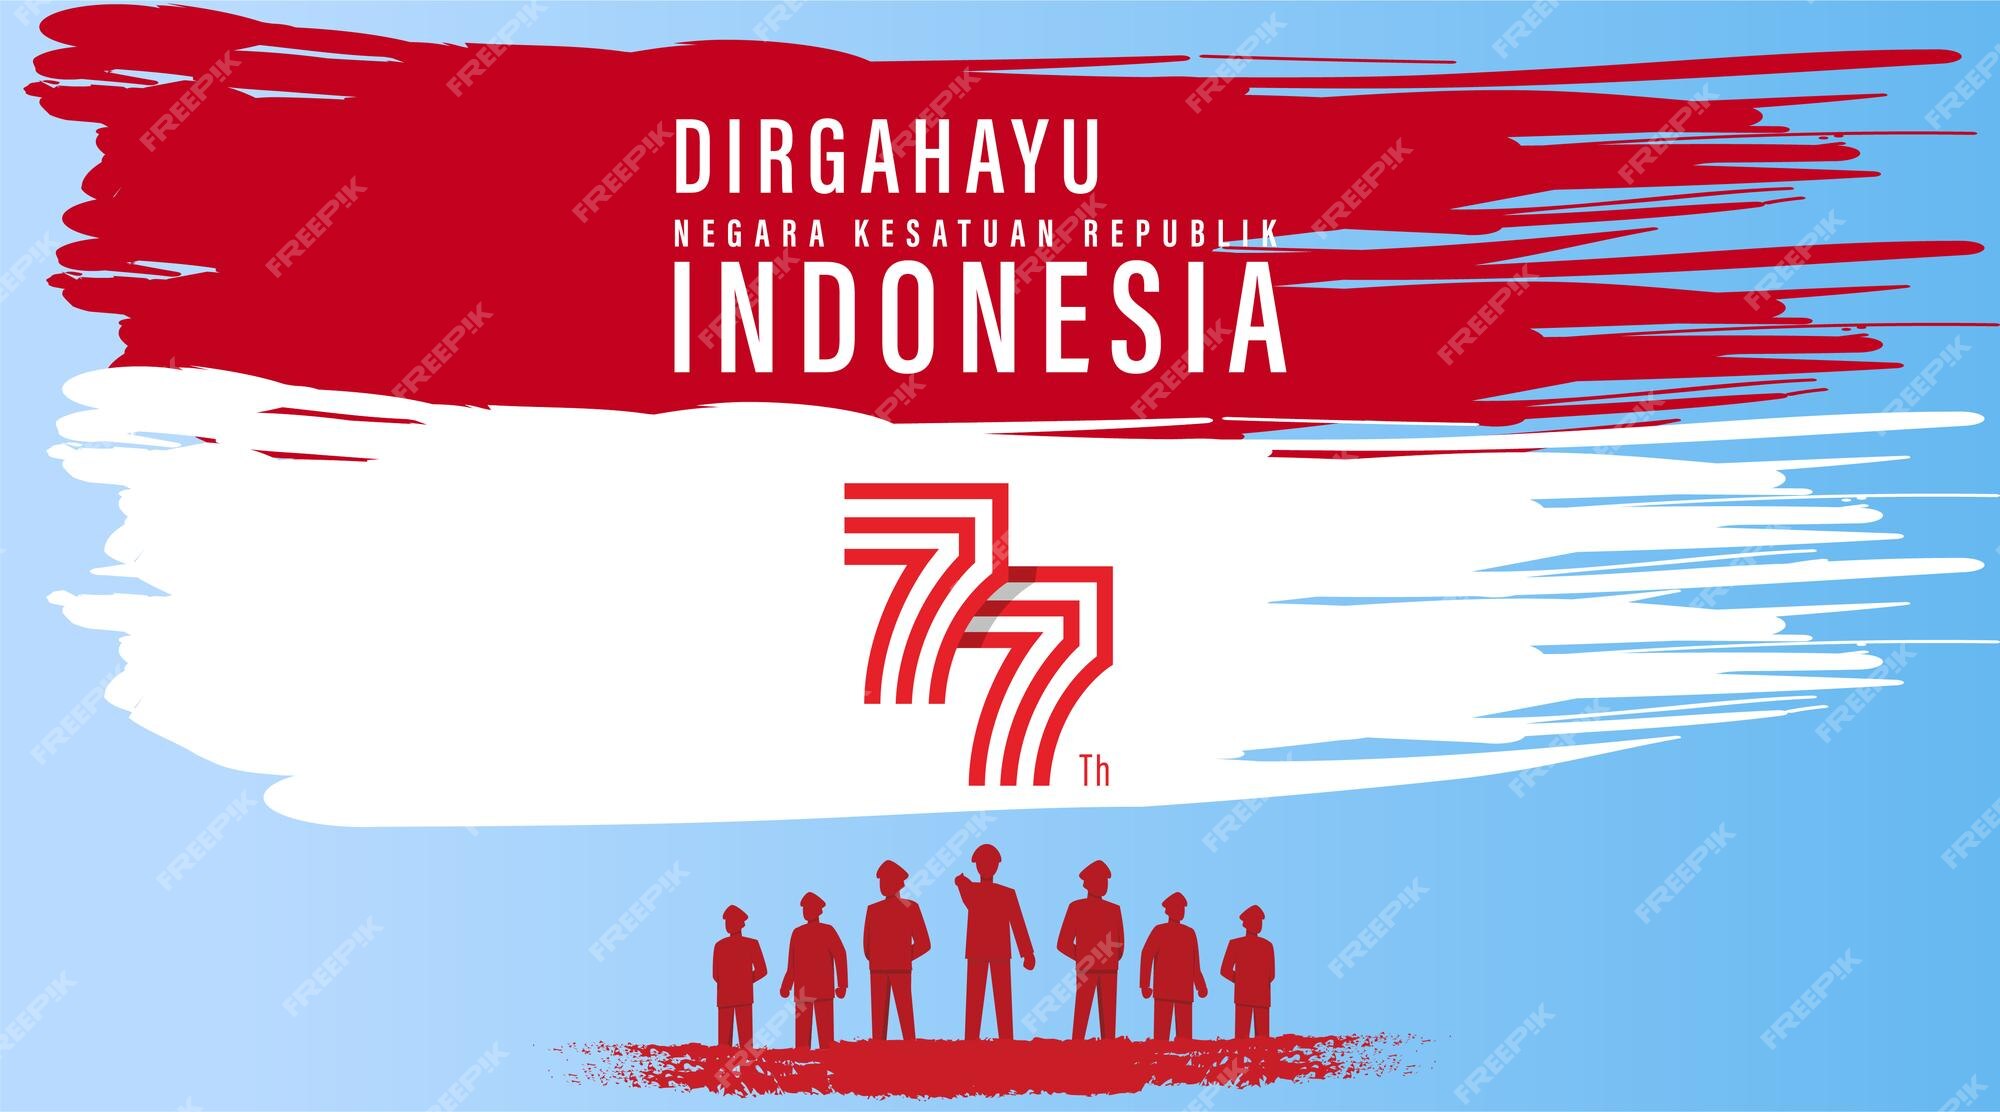 Ngày độc lập Indonesia là ngày lịch sử quan trọng của đất nước này, đánh dấu bước ngoặt quan trọng trong quá trình phát triển độc lập và tự do. Hãy xem hình ảnh liên quan và cùng chia sẻ niềm vui với người dân Indonesia!